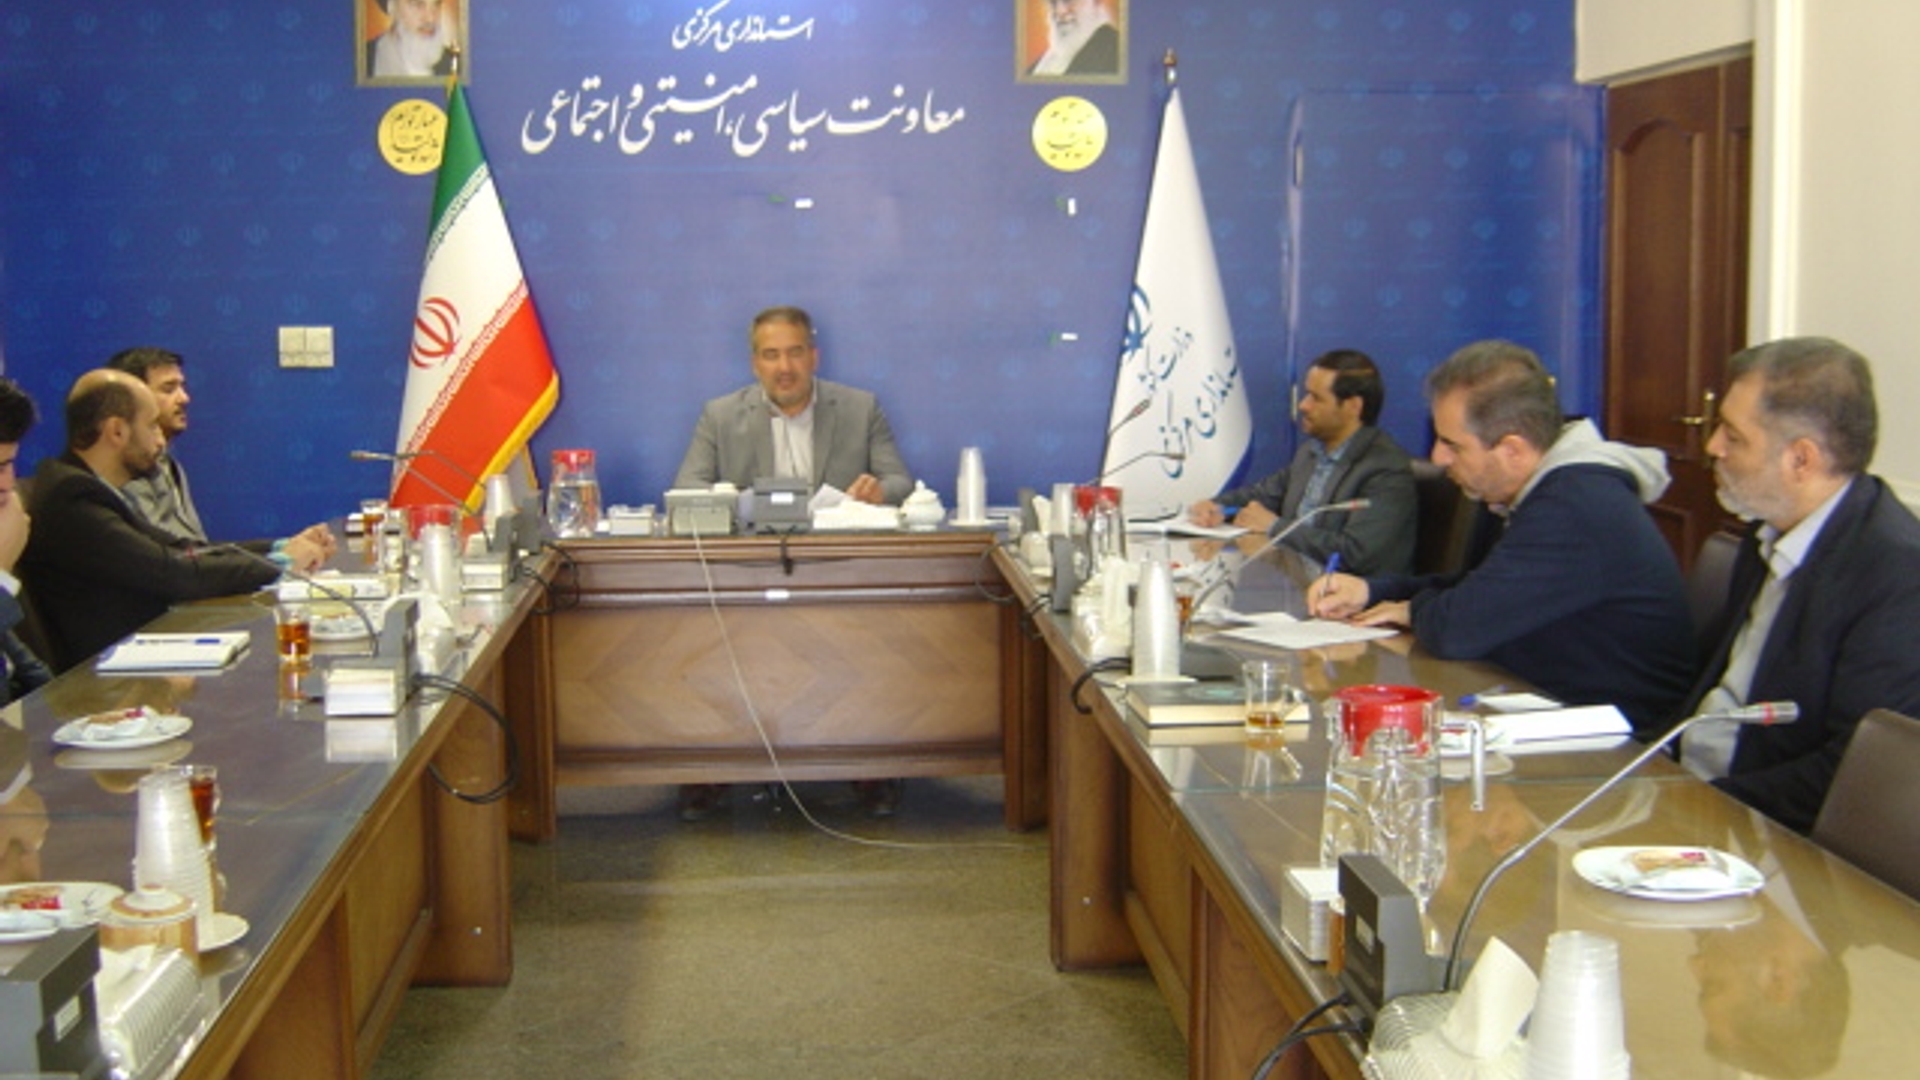 جلسه کمیسیون برآورد اطلاعات استان ساعت 8 صبح روز پنجشنبه مورخ 27-7-1402به ریاست آقای رحیمی تبار برگزار گردید.